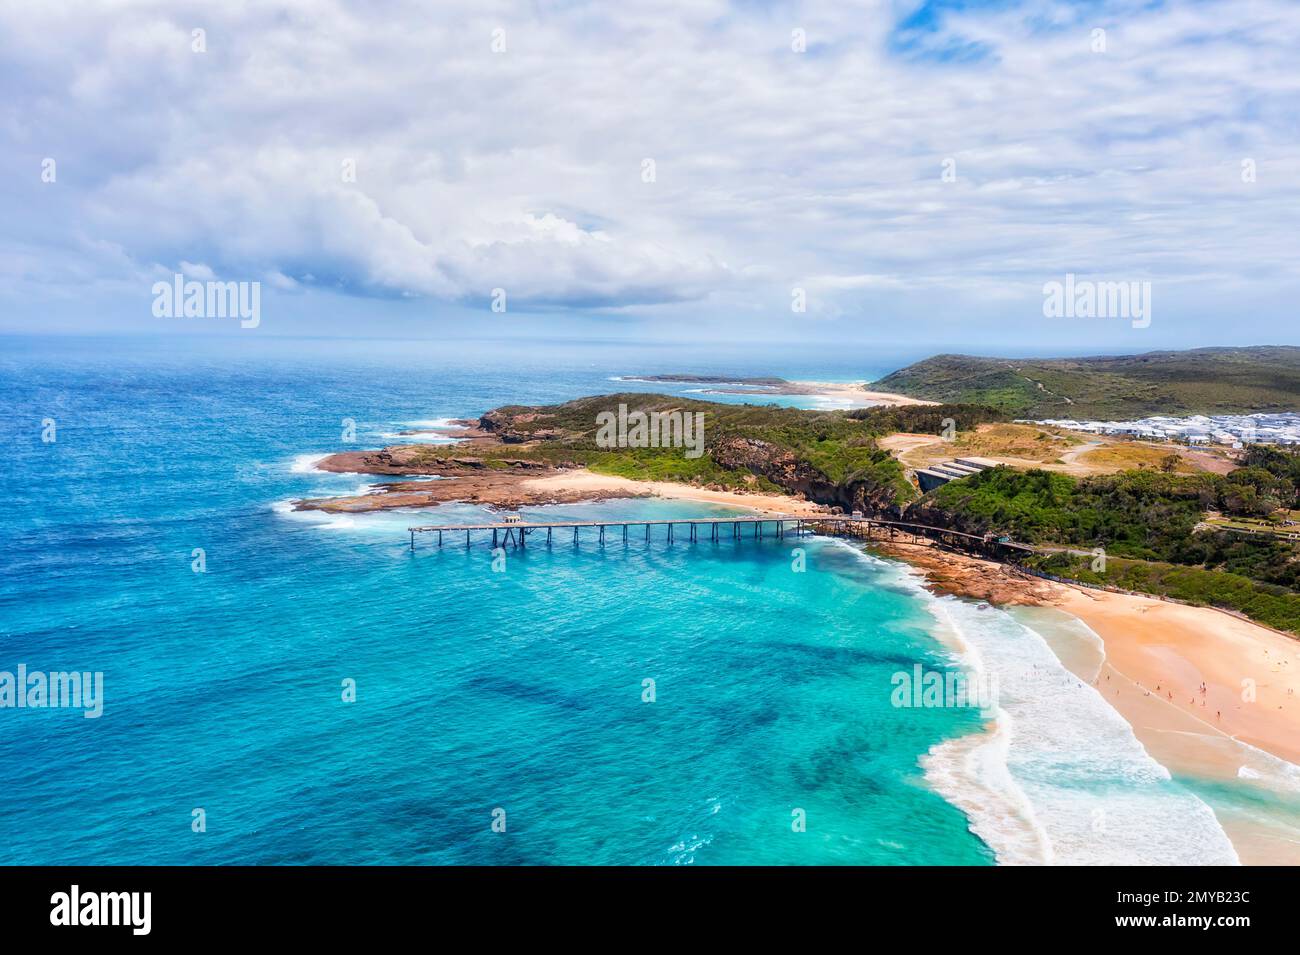 Lungomare panoramico della spiaggia dell'oceano Pacifico presso la baia di Catherine Hill in Australia. Foto Stock